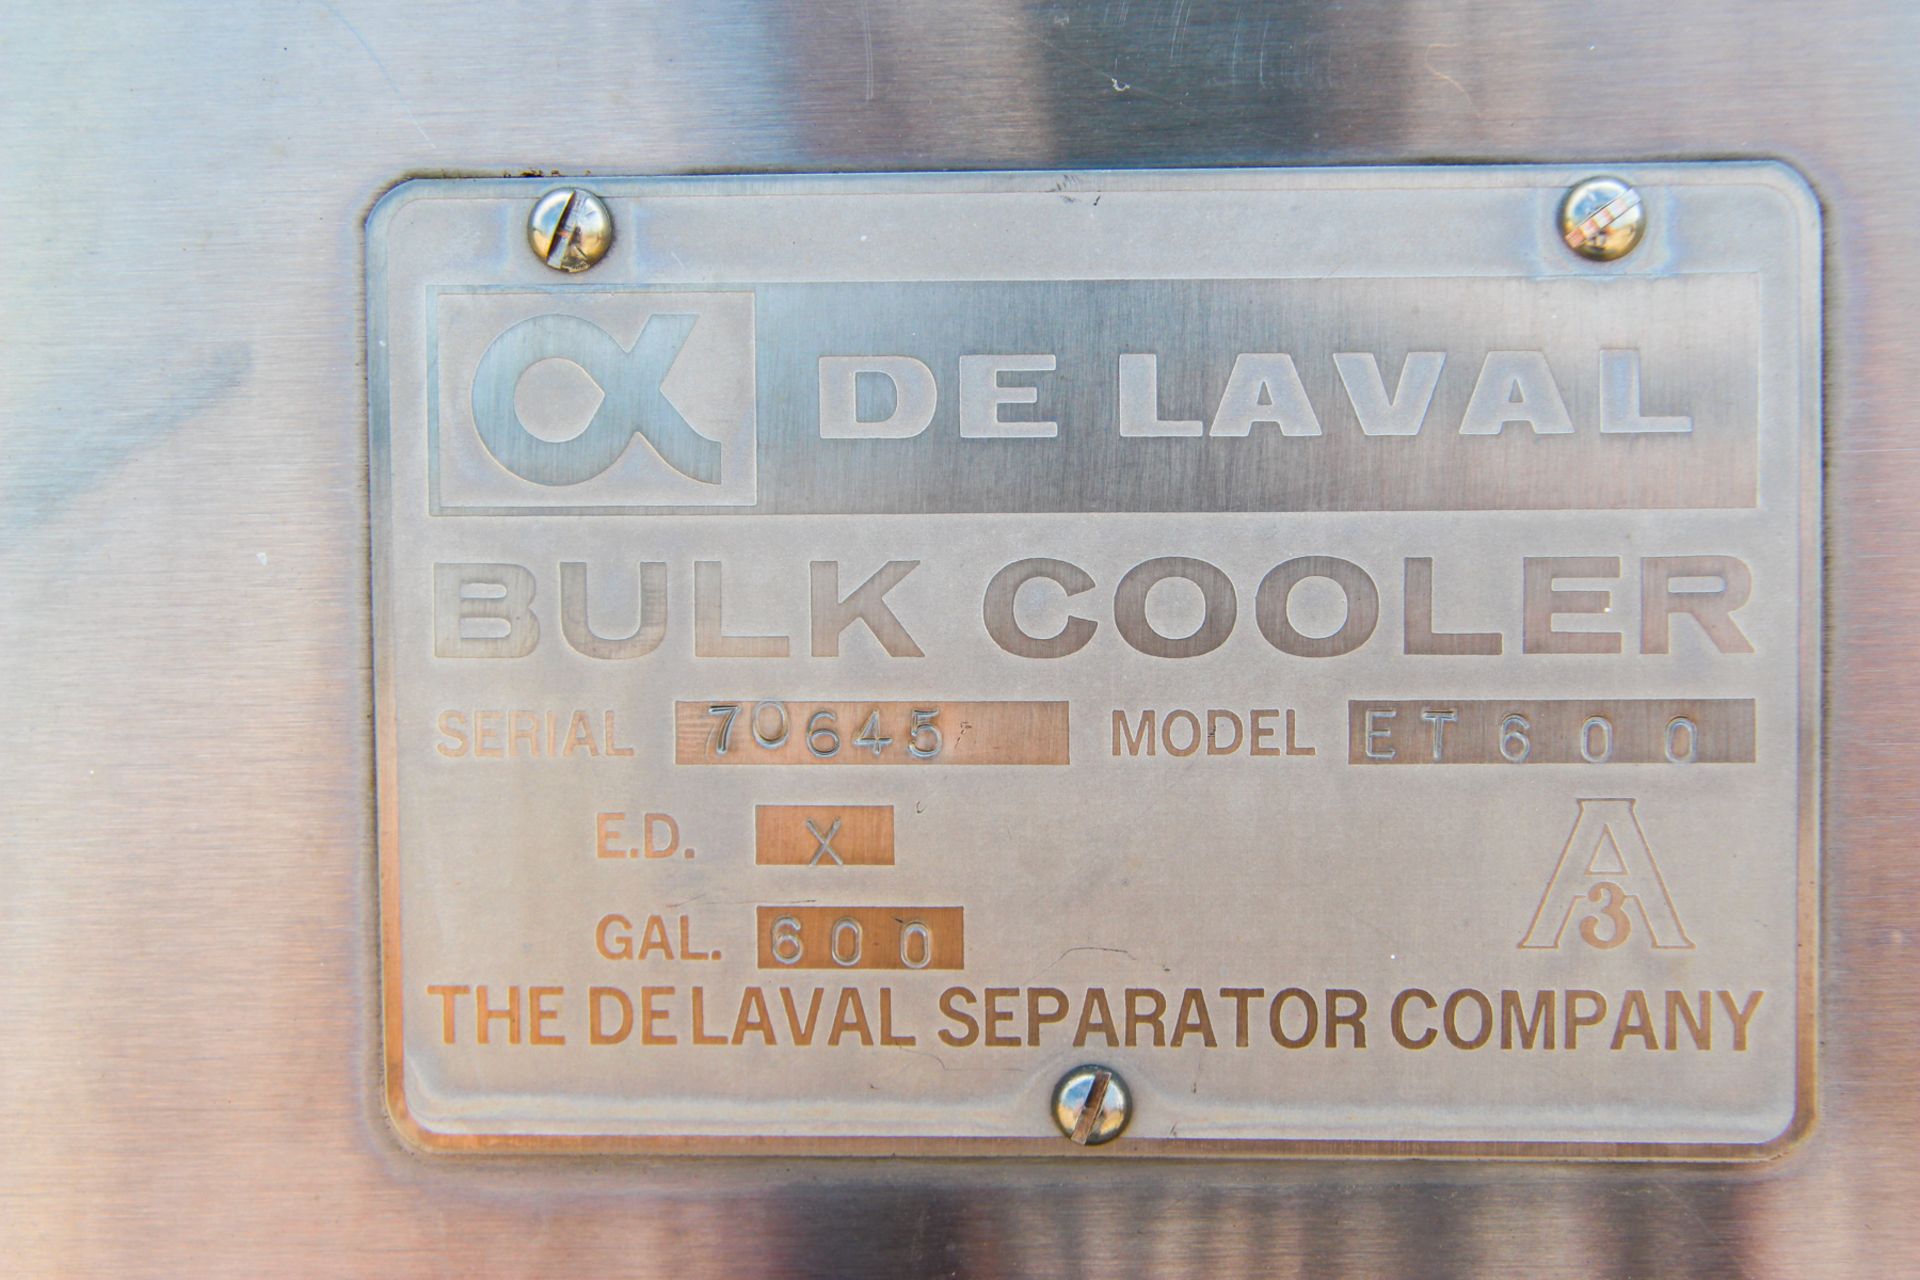 DE LAVAL S/S 600 GALLON JACKETED BULK MILK COOLER, MODEL ET600, S/N 70645, TOP-MOUNT AGITATION ( - Image 5 of 5